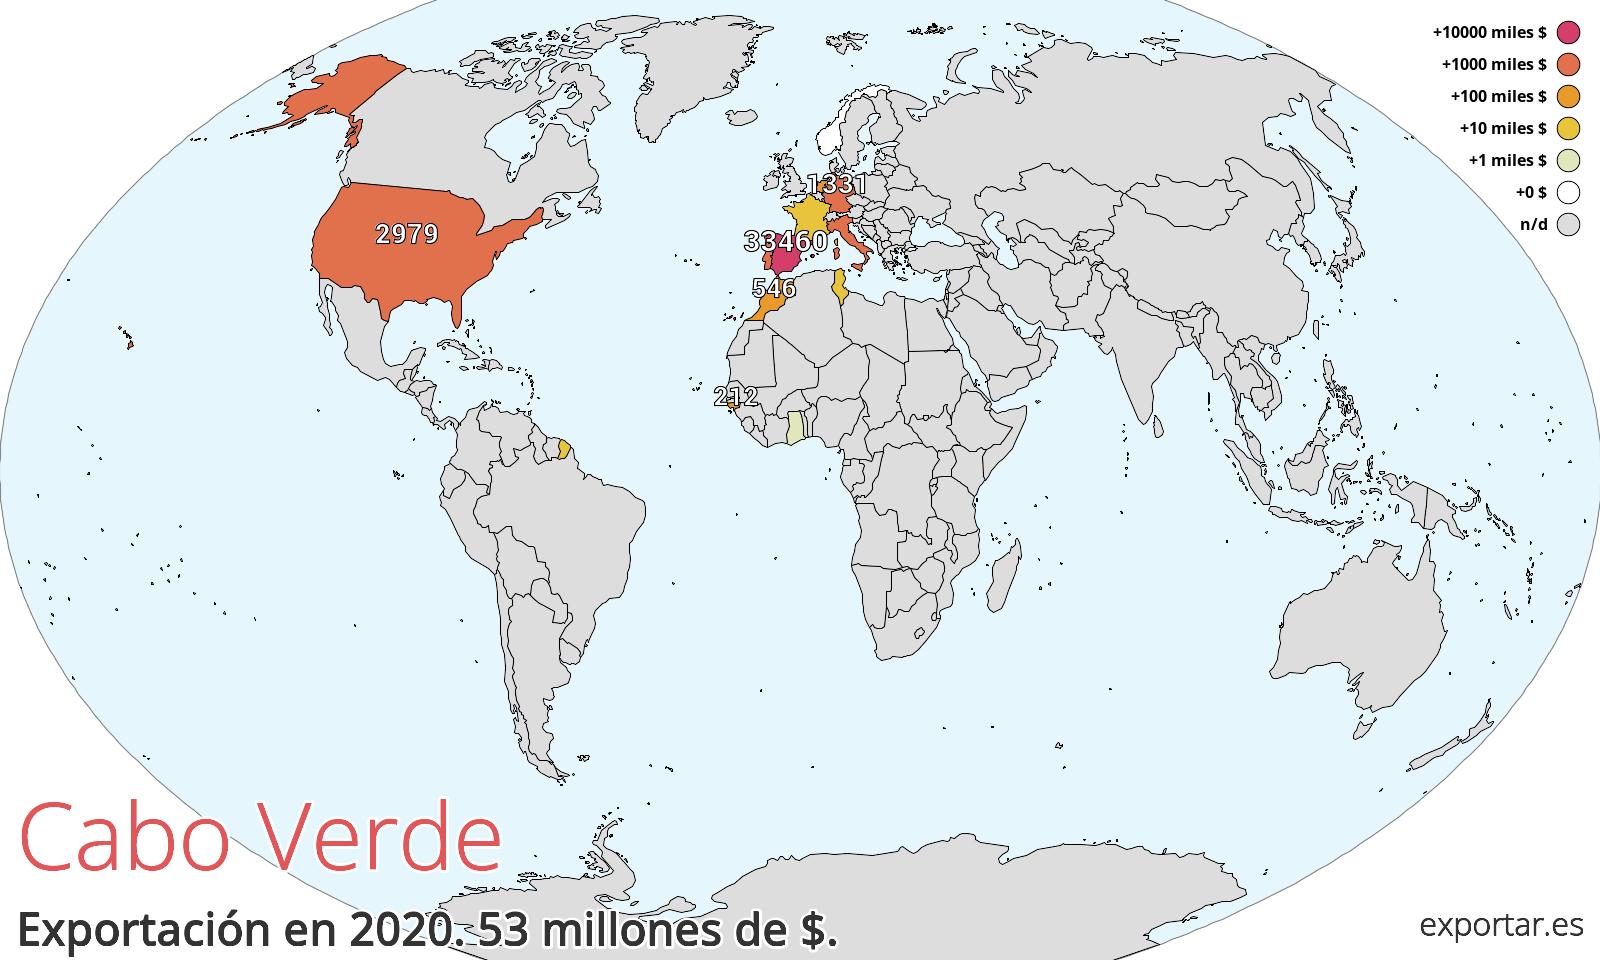 Mapa de exportación de Cabo Verde en 2020.